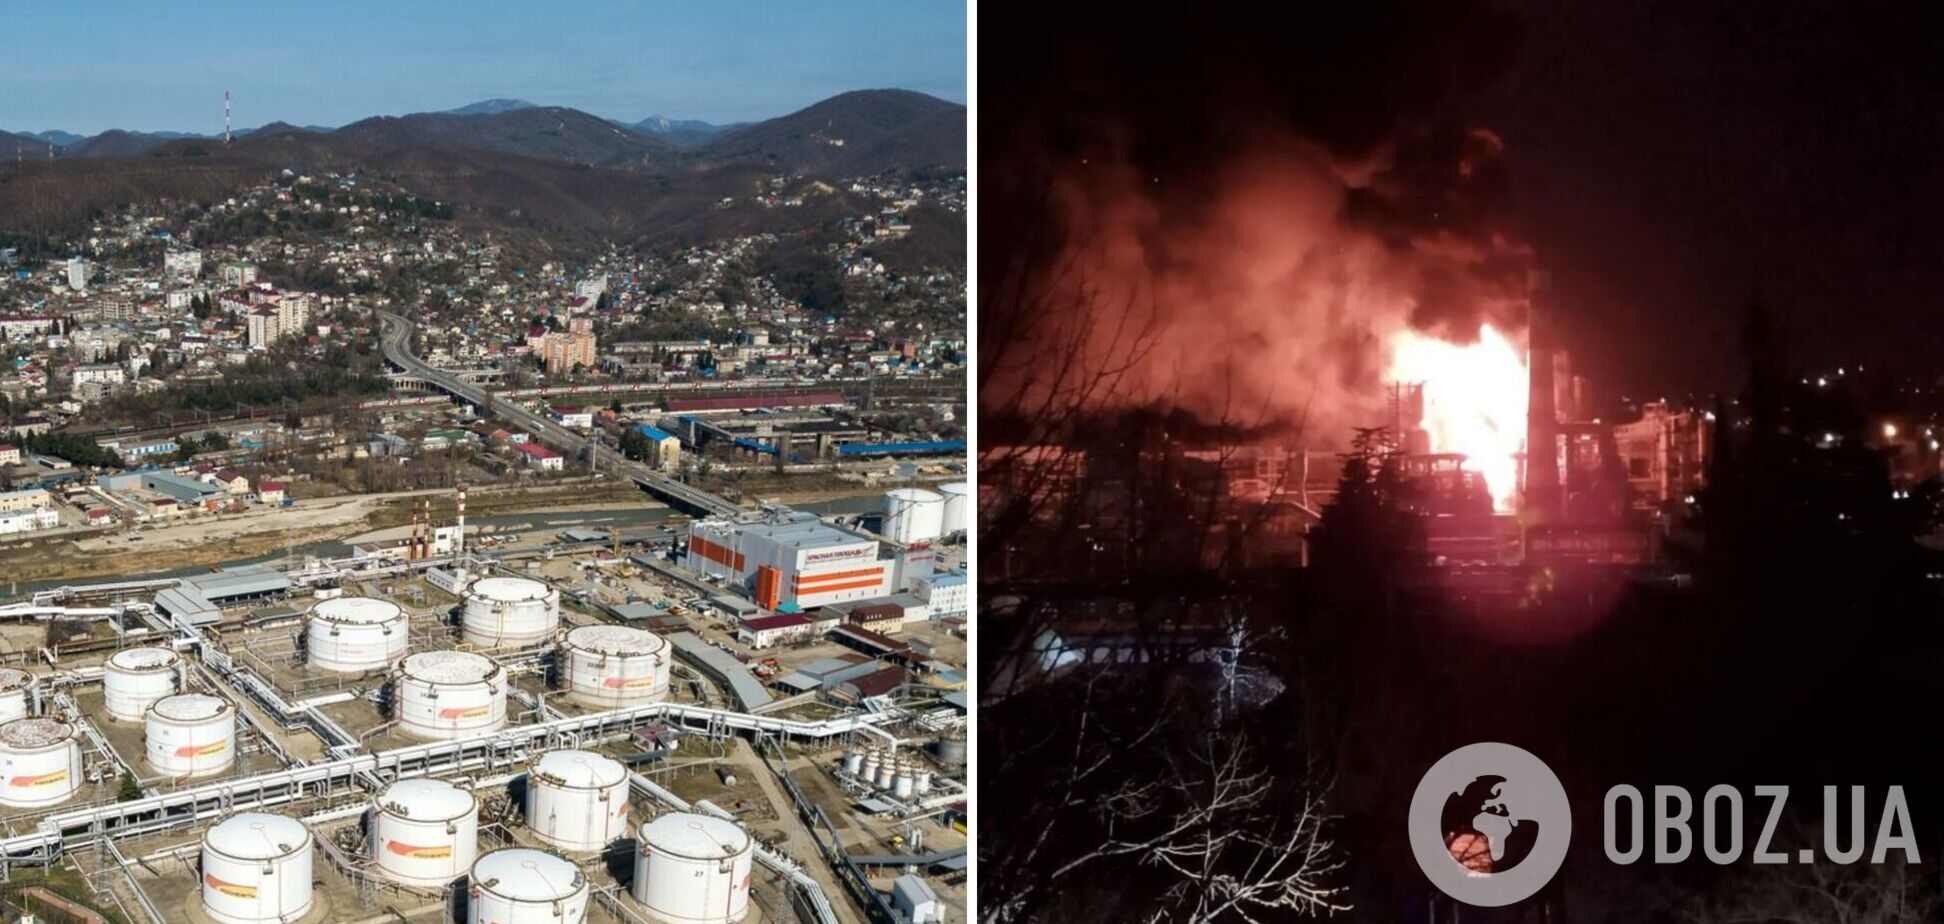 Після атаки безпілотників завод у Туапсе зупинив переробку нафти: усі подробиці